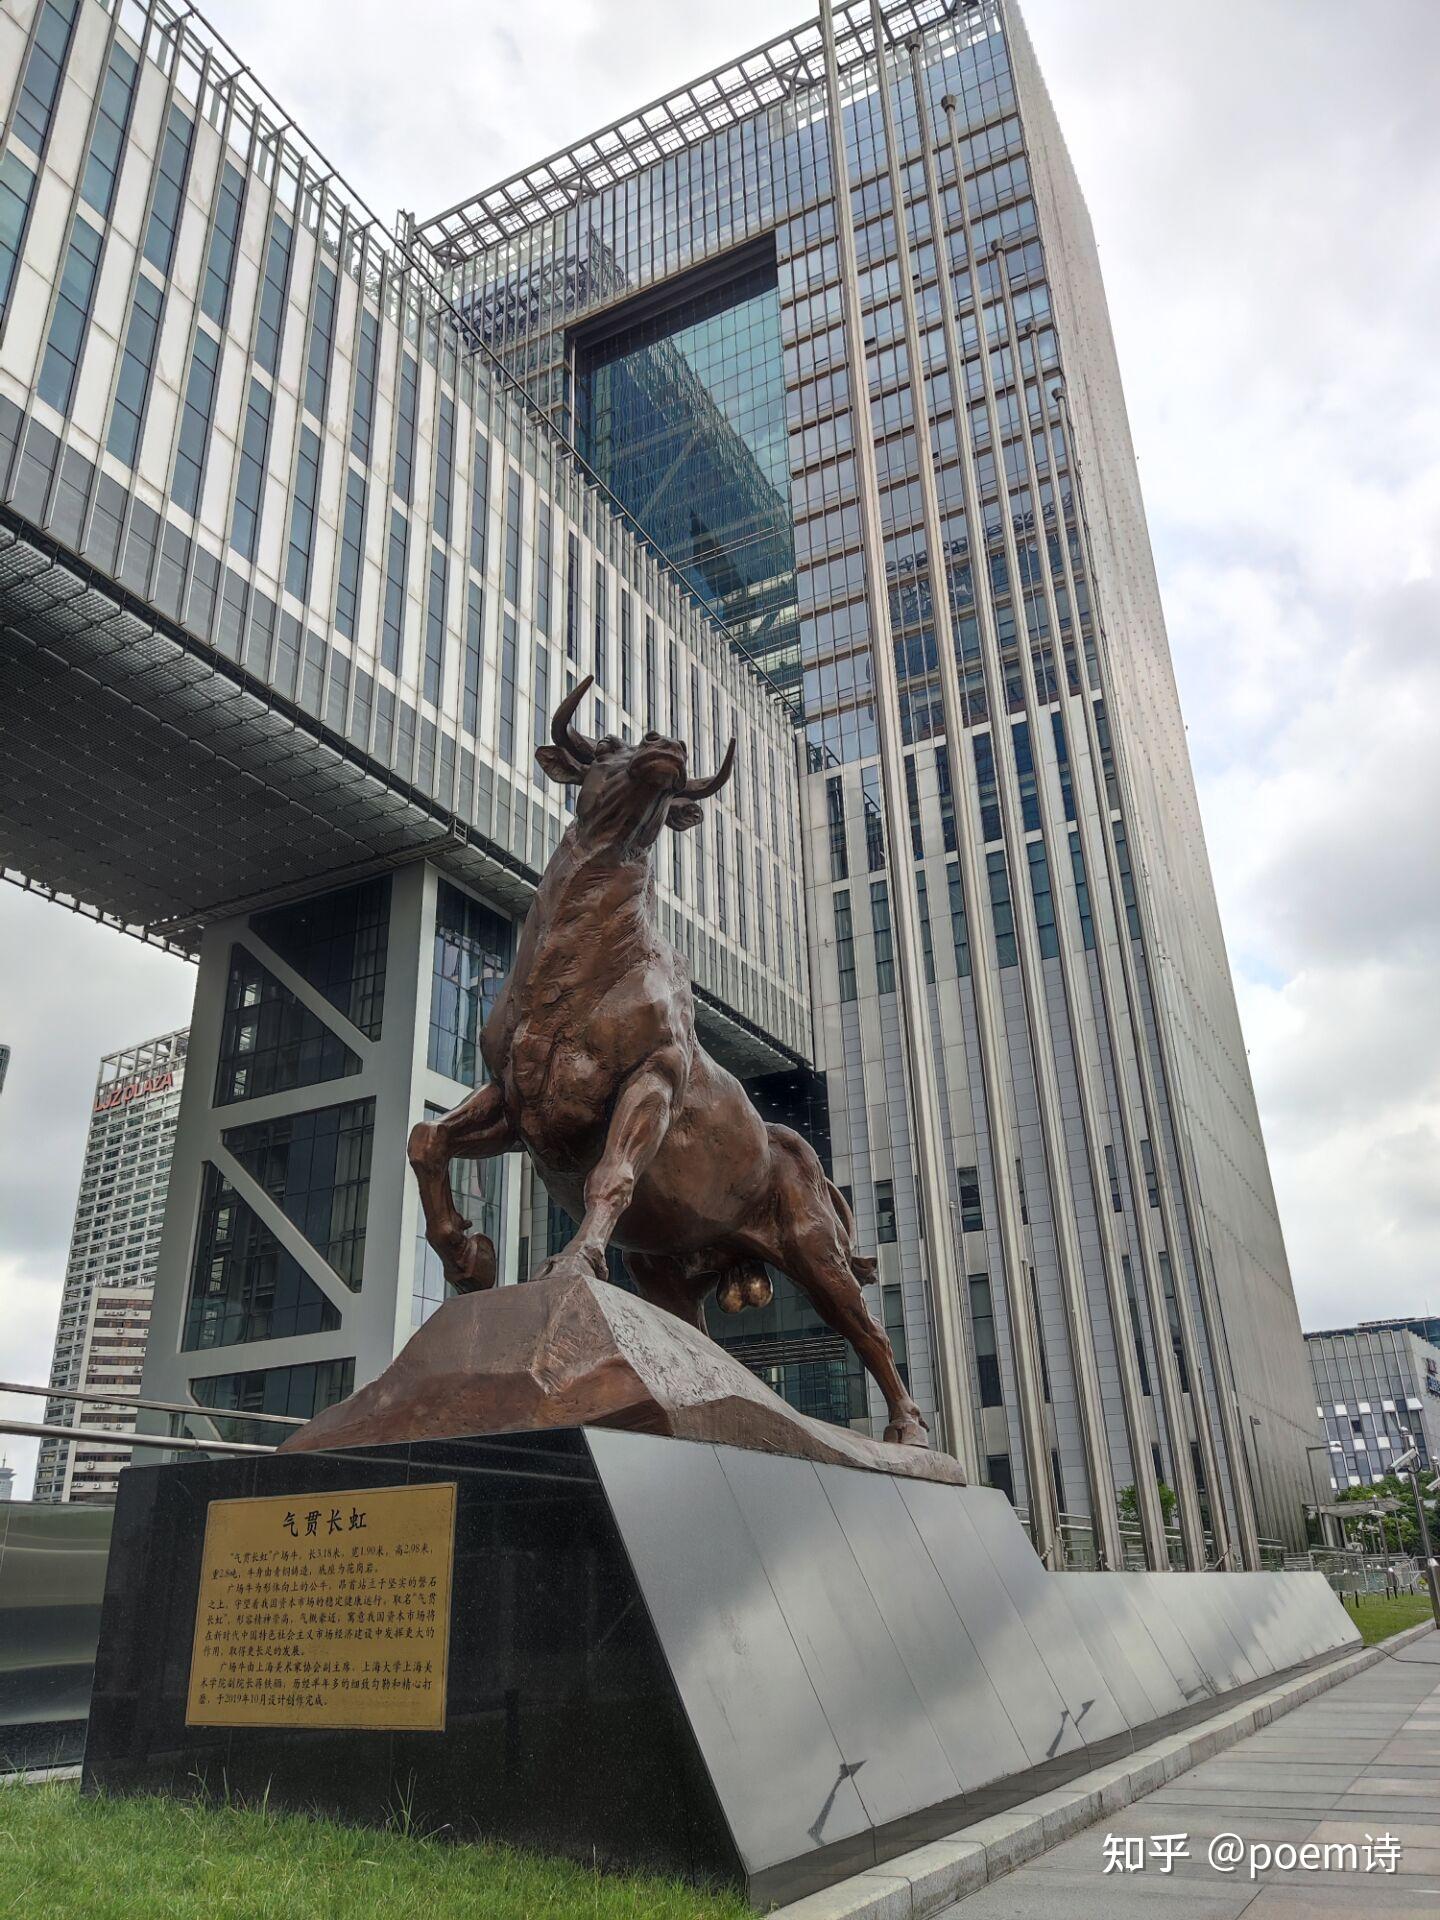 上海证券交易所外观图片